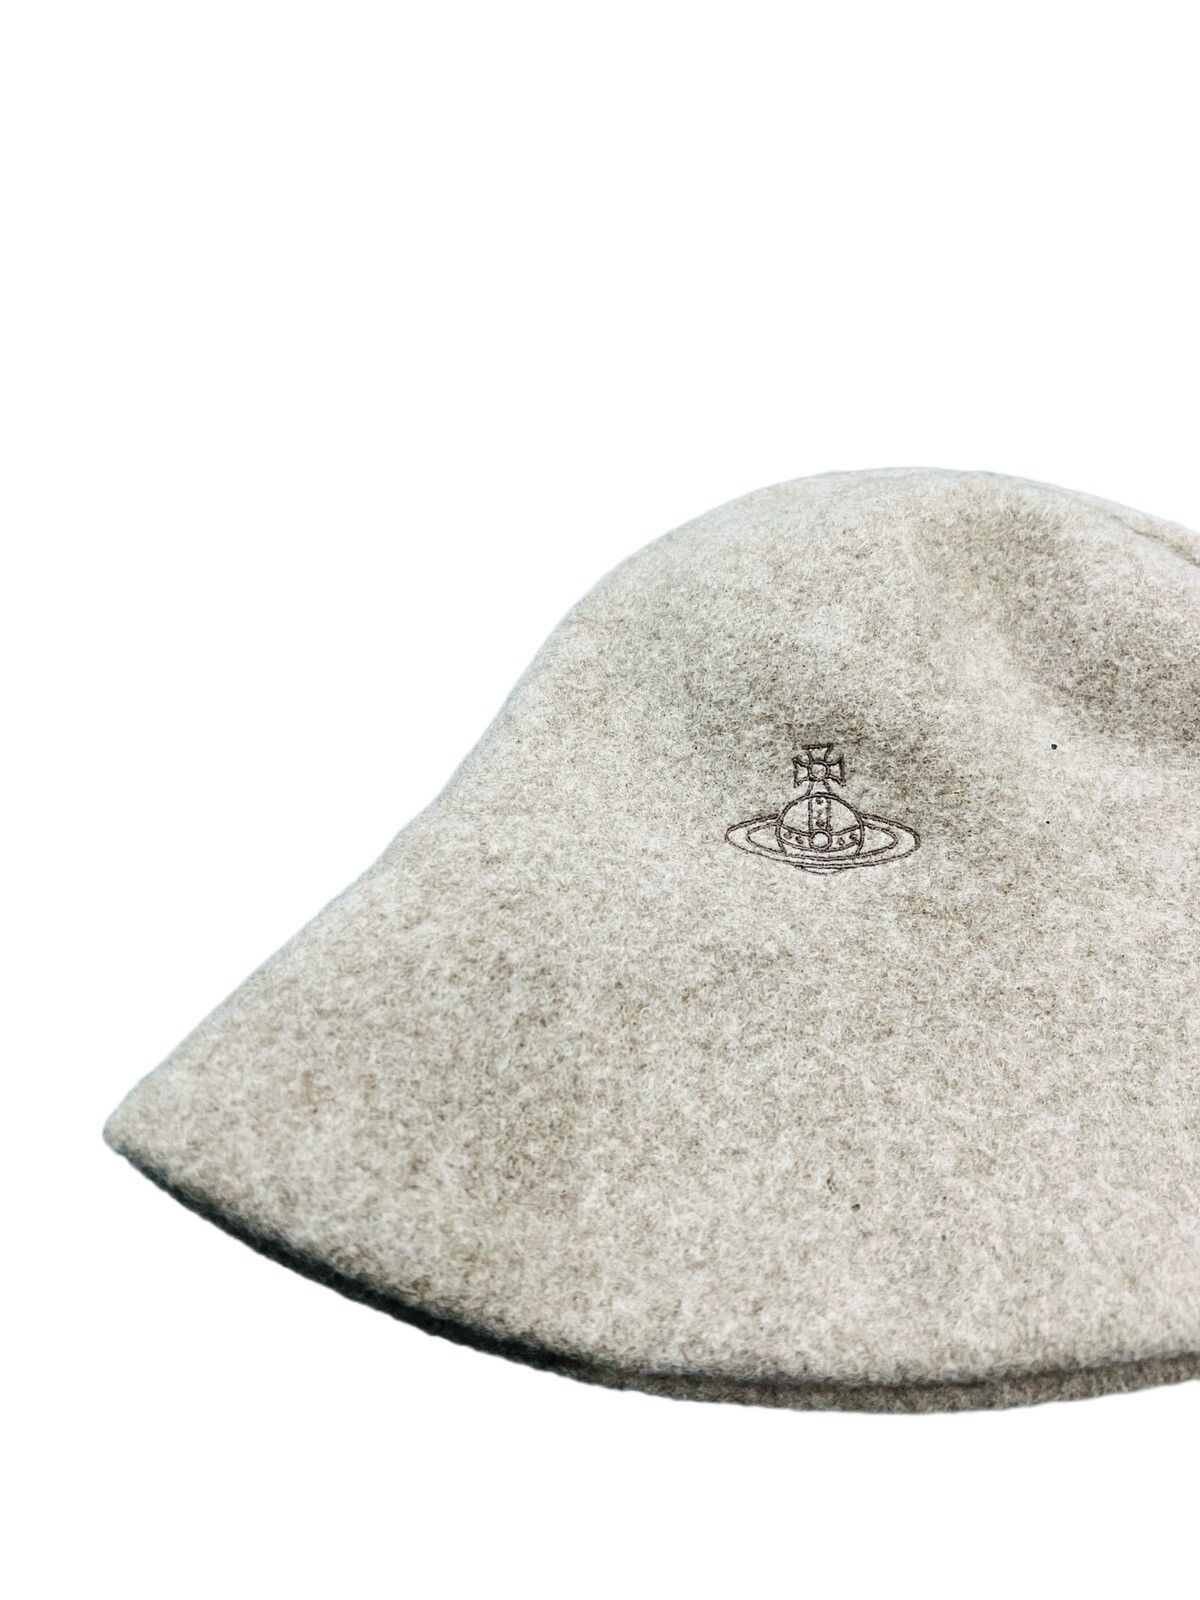 Vivienne Westwood Wool Hat - 3